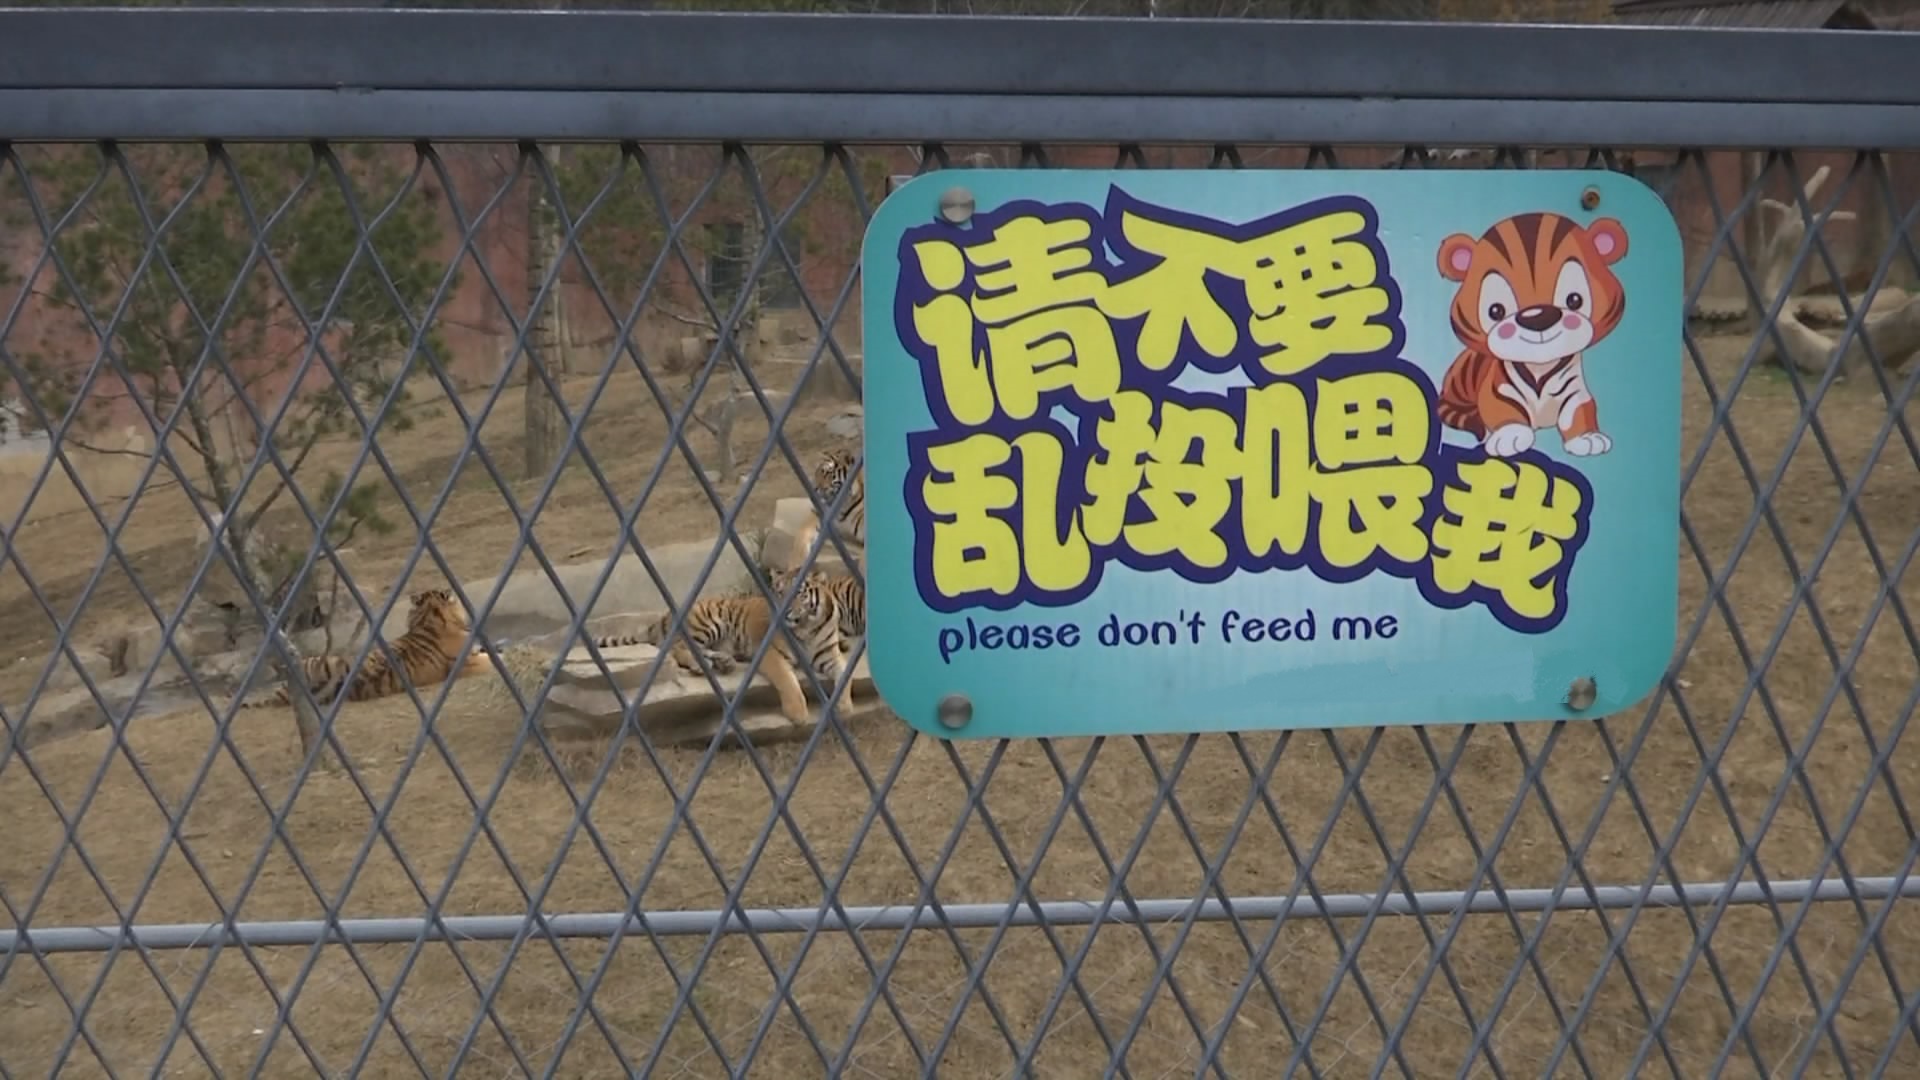 游客在动物园内自带食物投喂动物是被明令禁止的行为,园方为此专门设